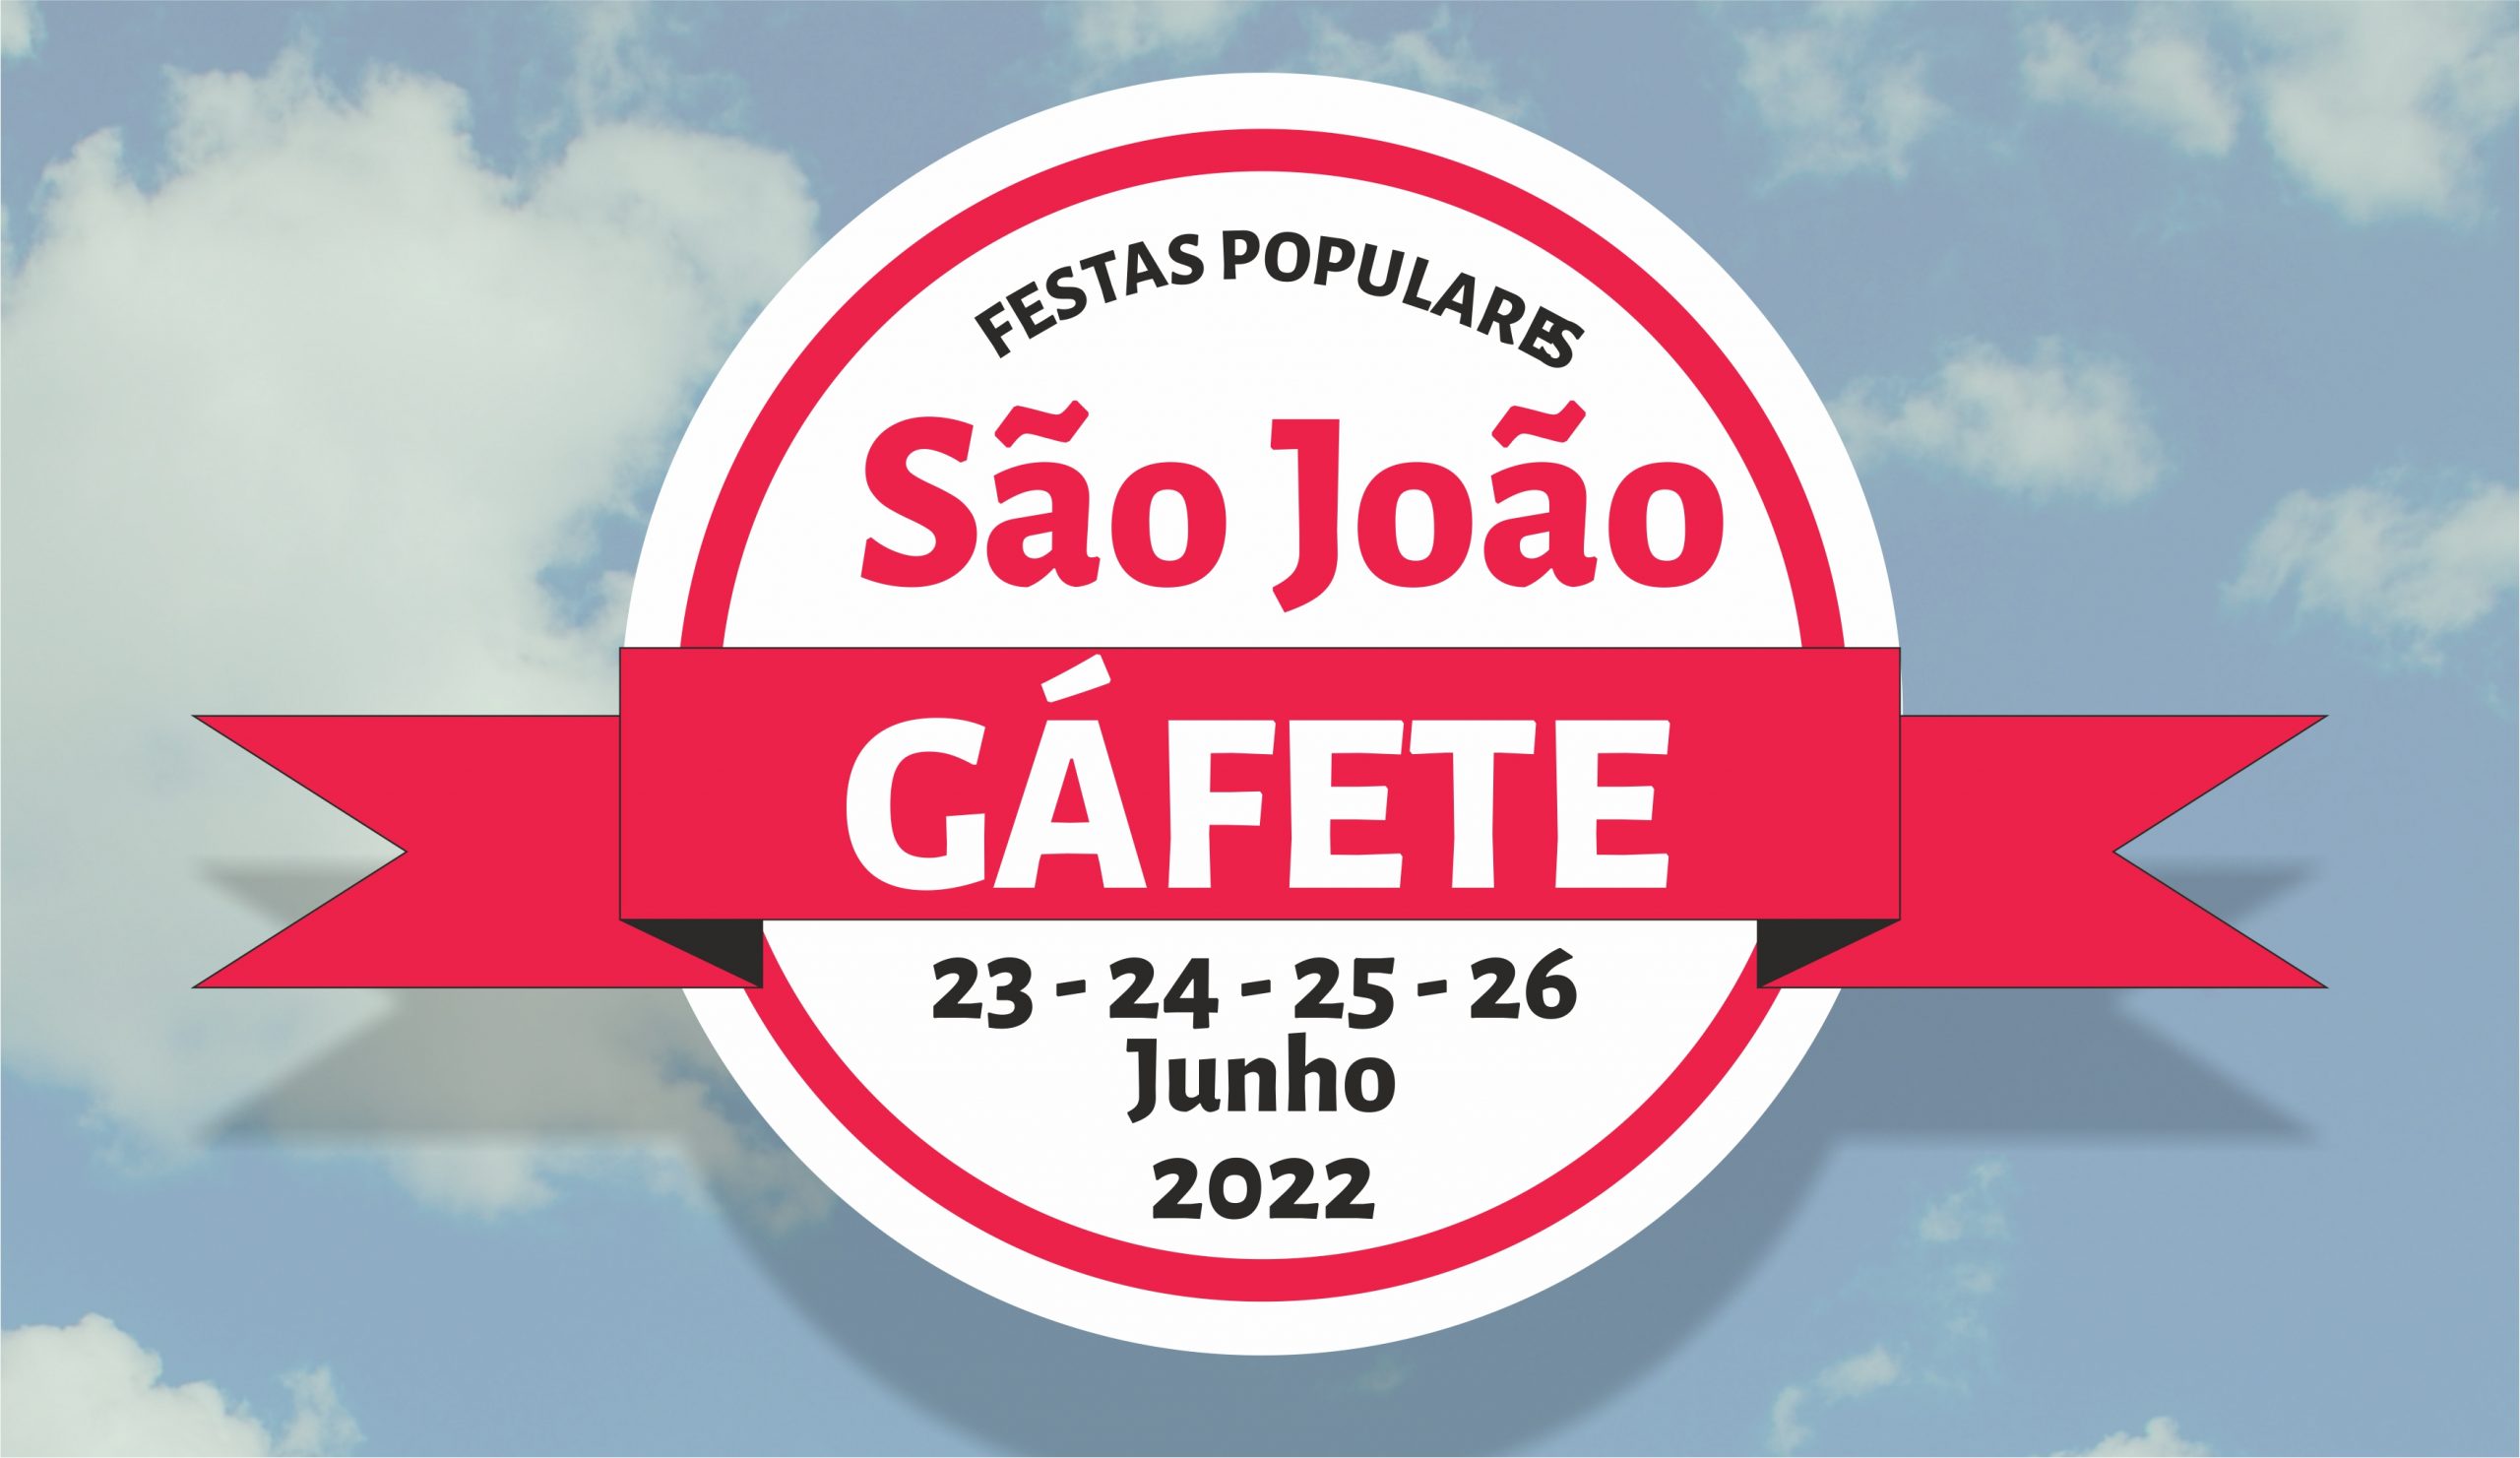 Festas Populares de São João – Gáfete